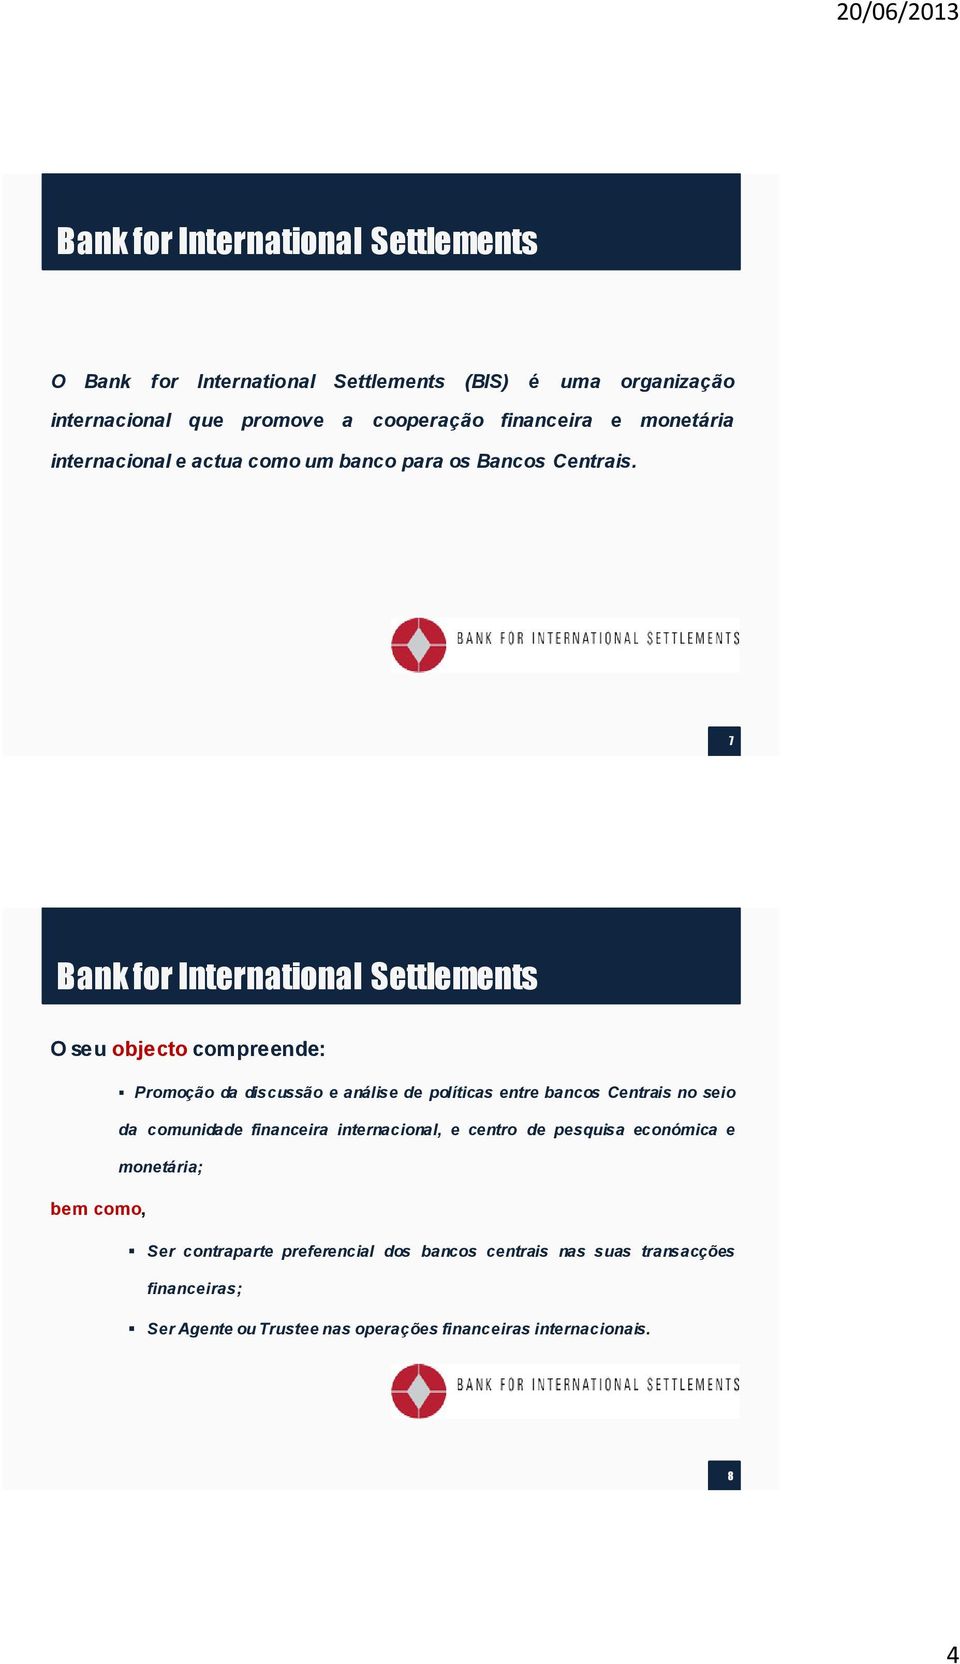 7 Bank for International Settlements O seu objecto compreende: Promoção da discussão e análise de políticas entre bancos Centrais no seio da